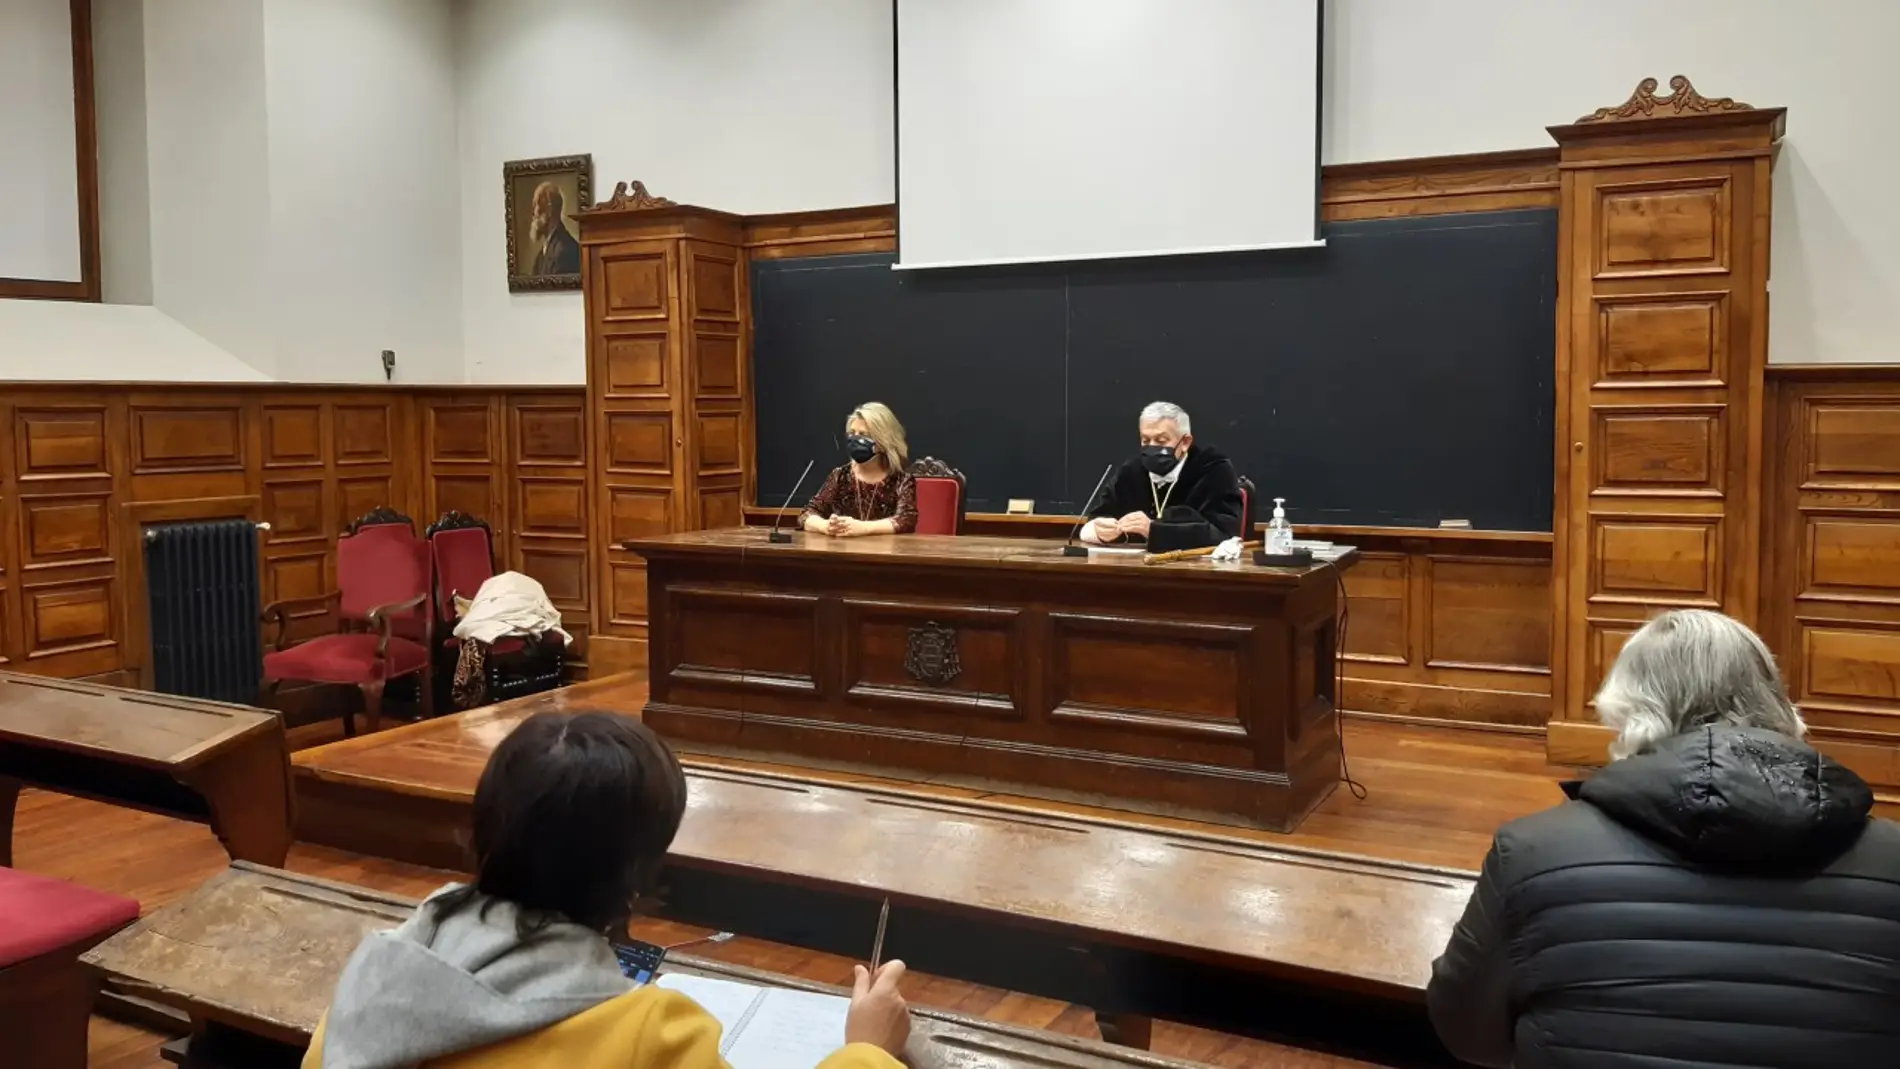 El Rector de la Universidad de Oviedo defiende los exámenes presenciales frente a "interferencias"